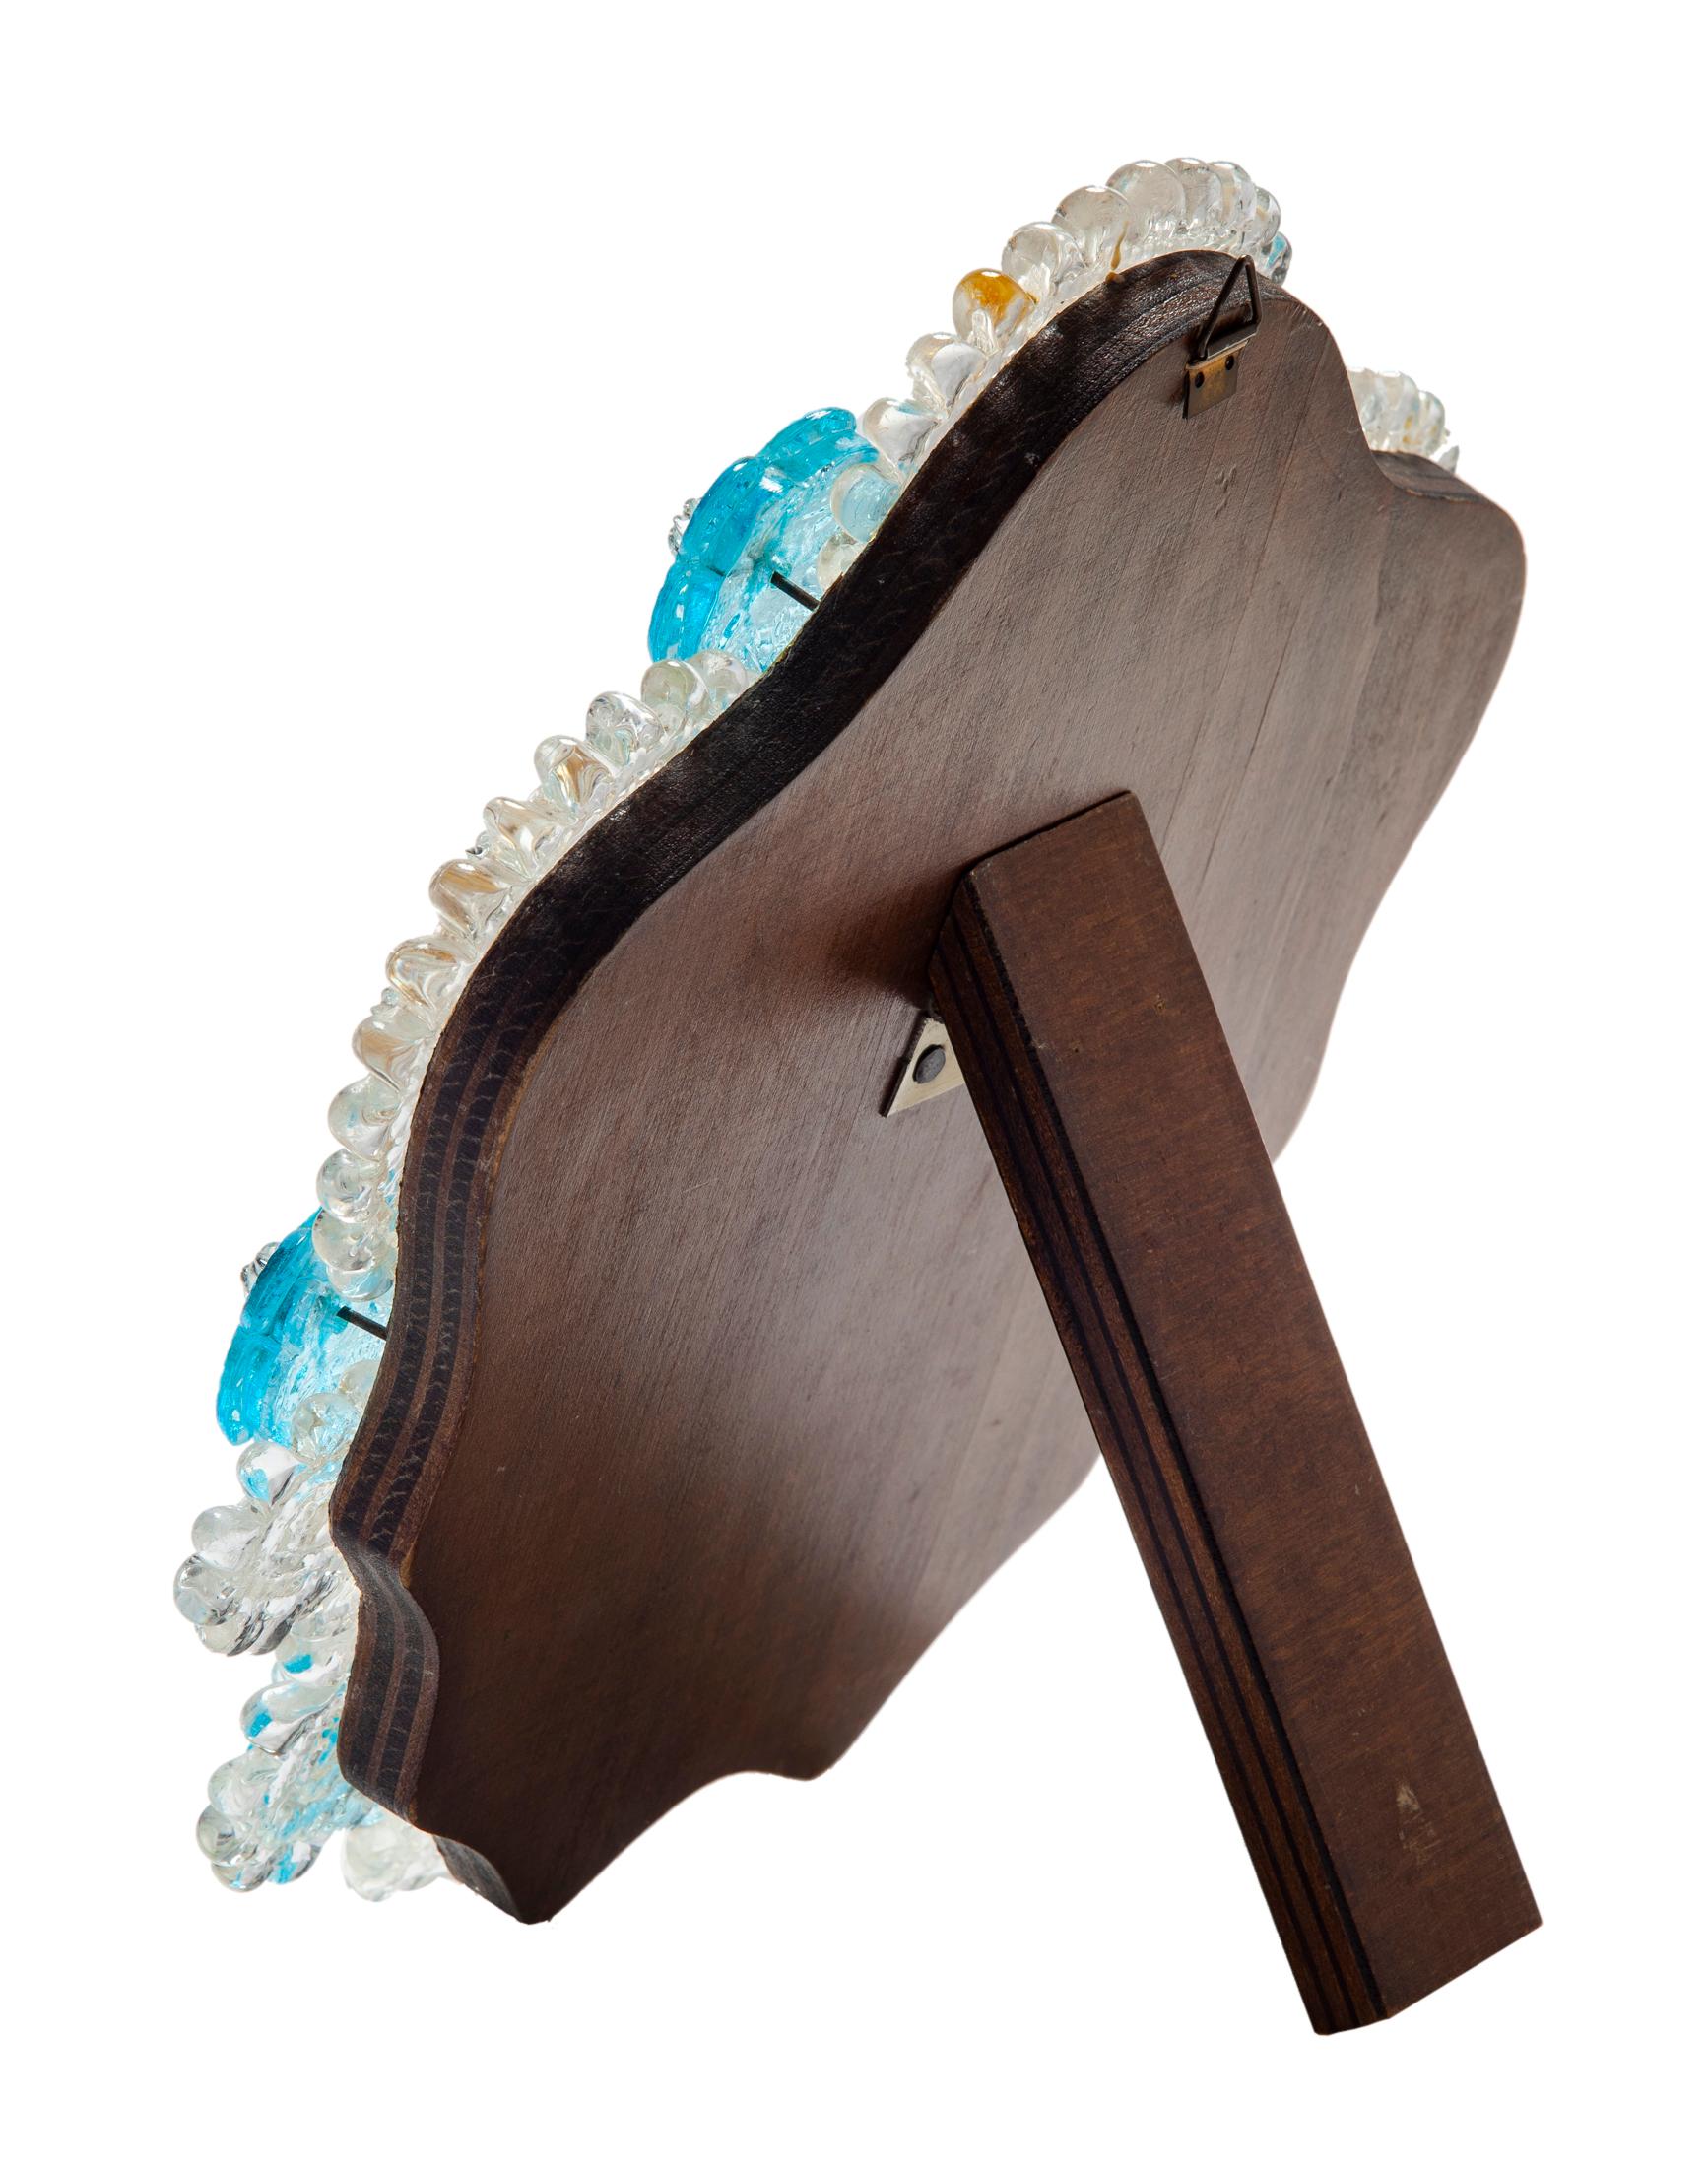 Art Glass Handblown Venetian Artisan Glass Frame Mirror / Hardwood Easel For Sale